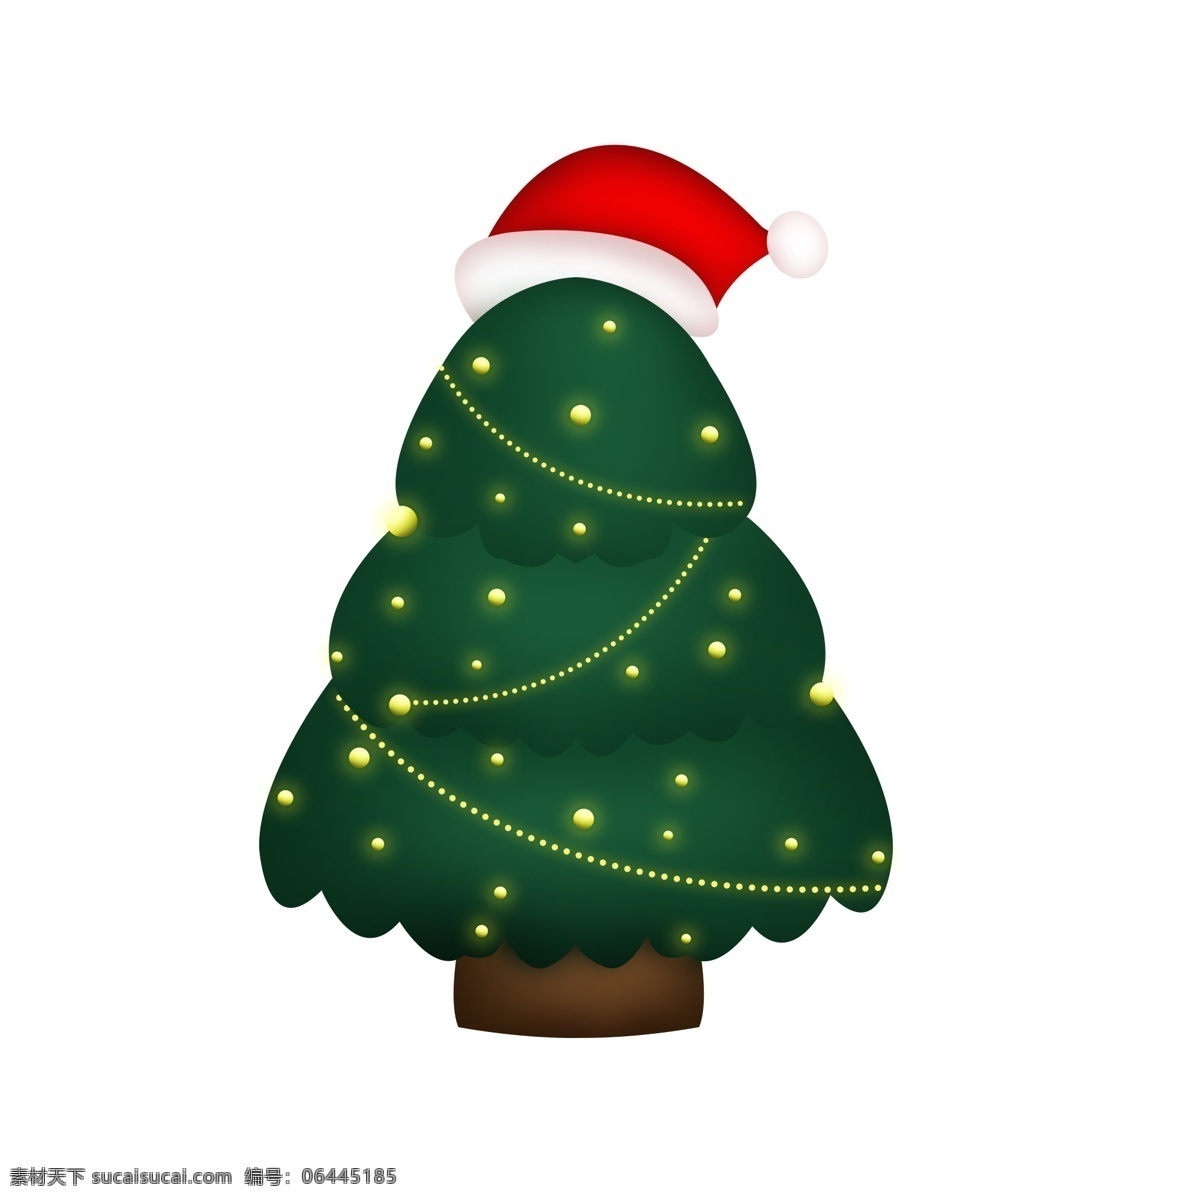 圣诞节 装饰 红帽子 圣诞树 卡通 发光 夜光 树 装饰素材 元素 夜光树 可商用 节日装点 霓光灯